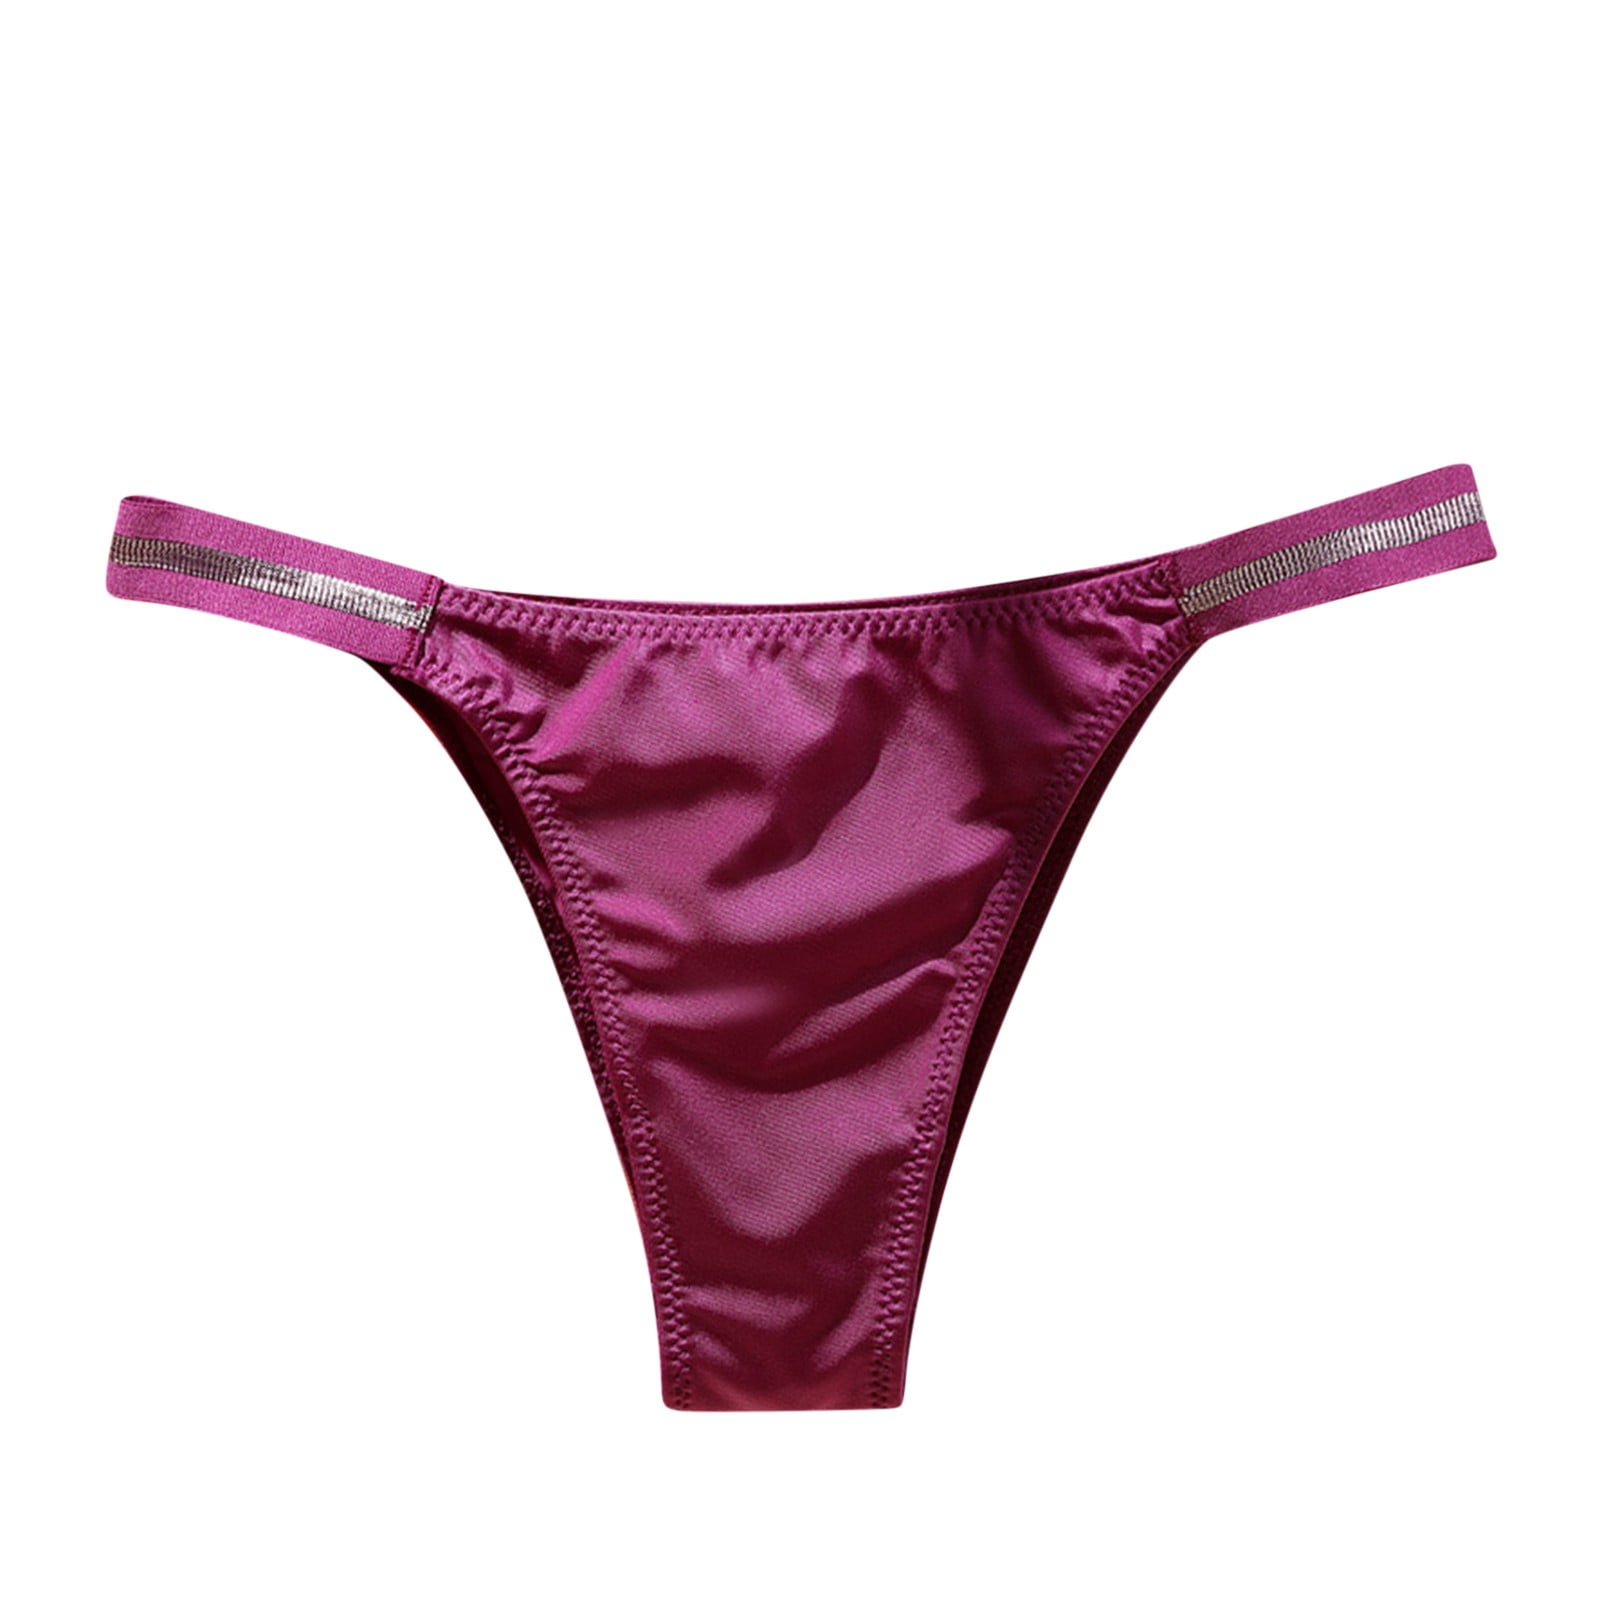 Pedort Women's Panties Underwear for Women Heavy Flow Panties